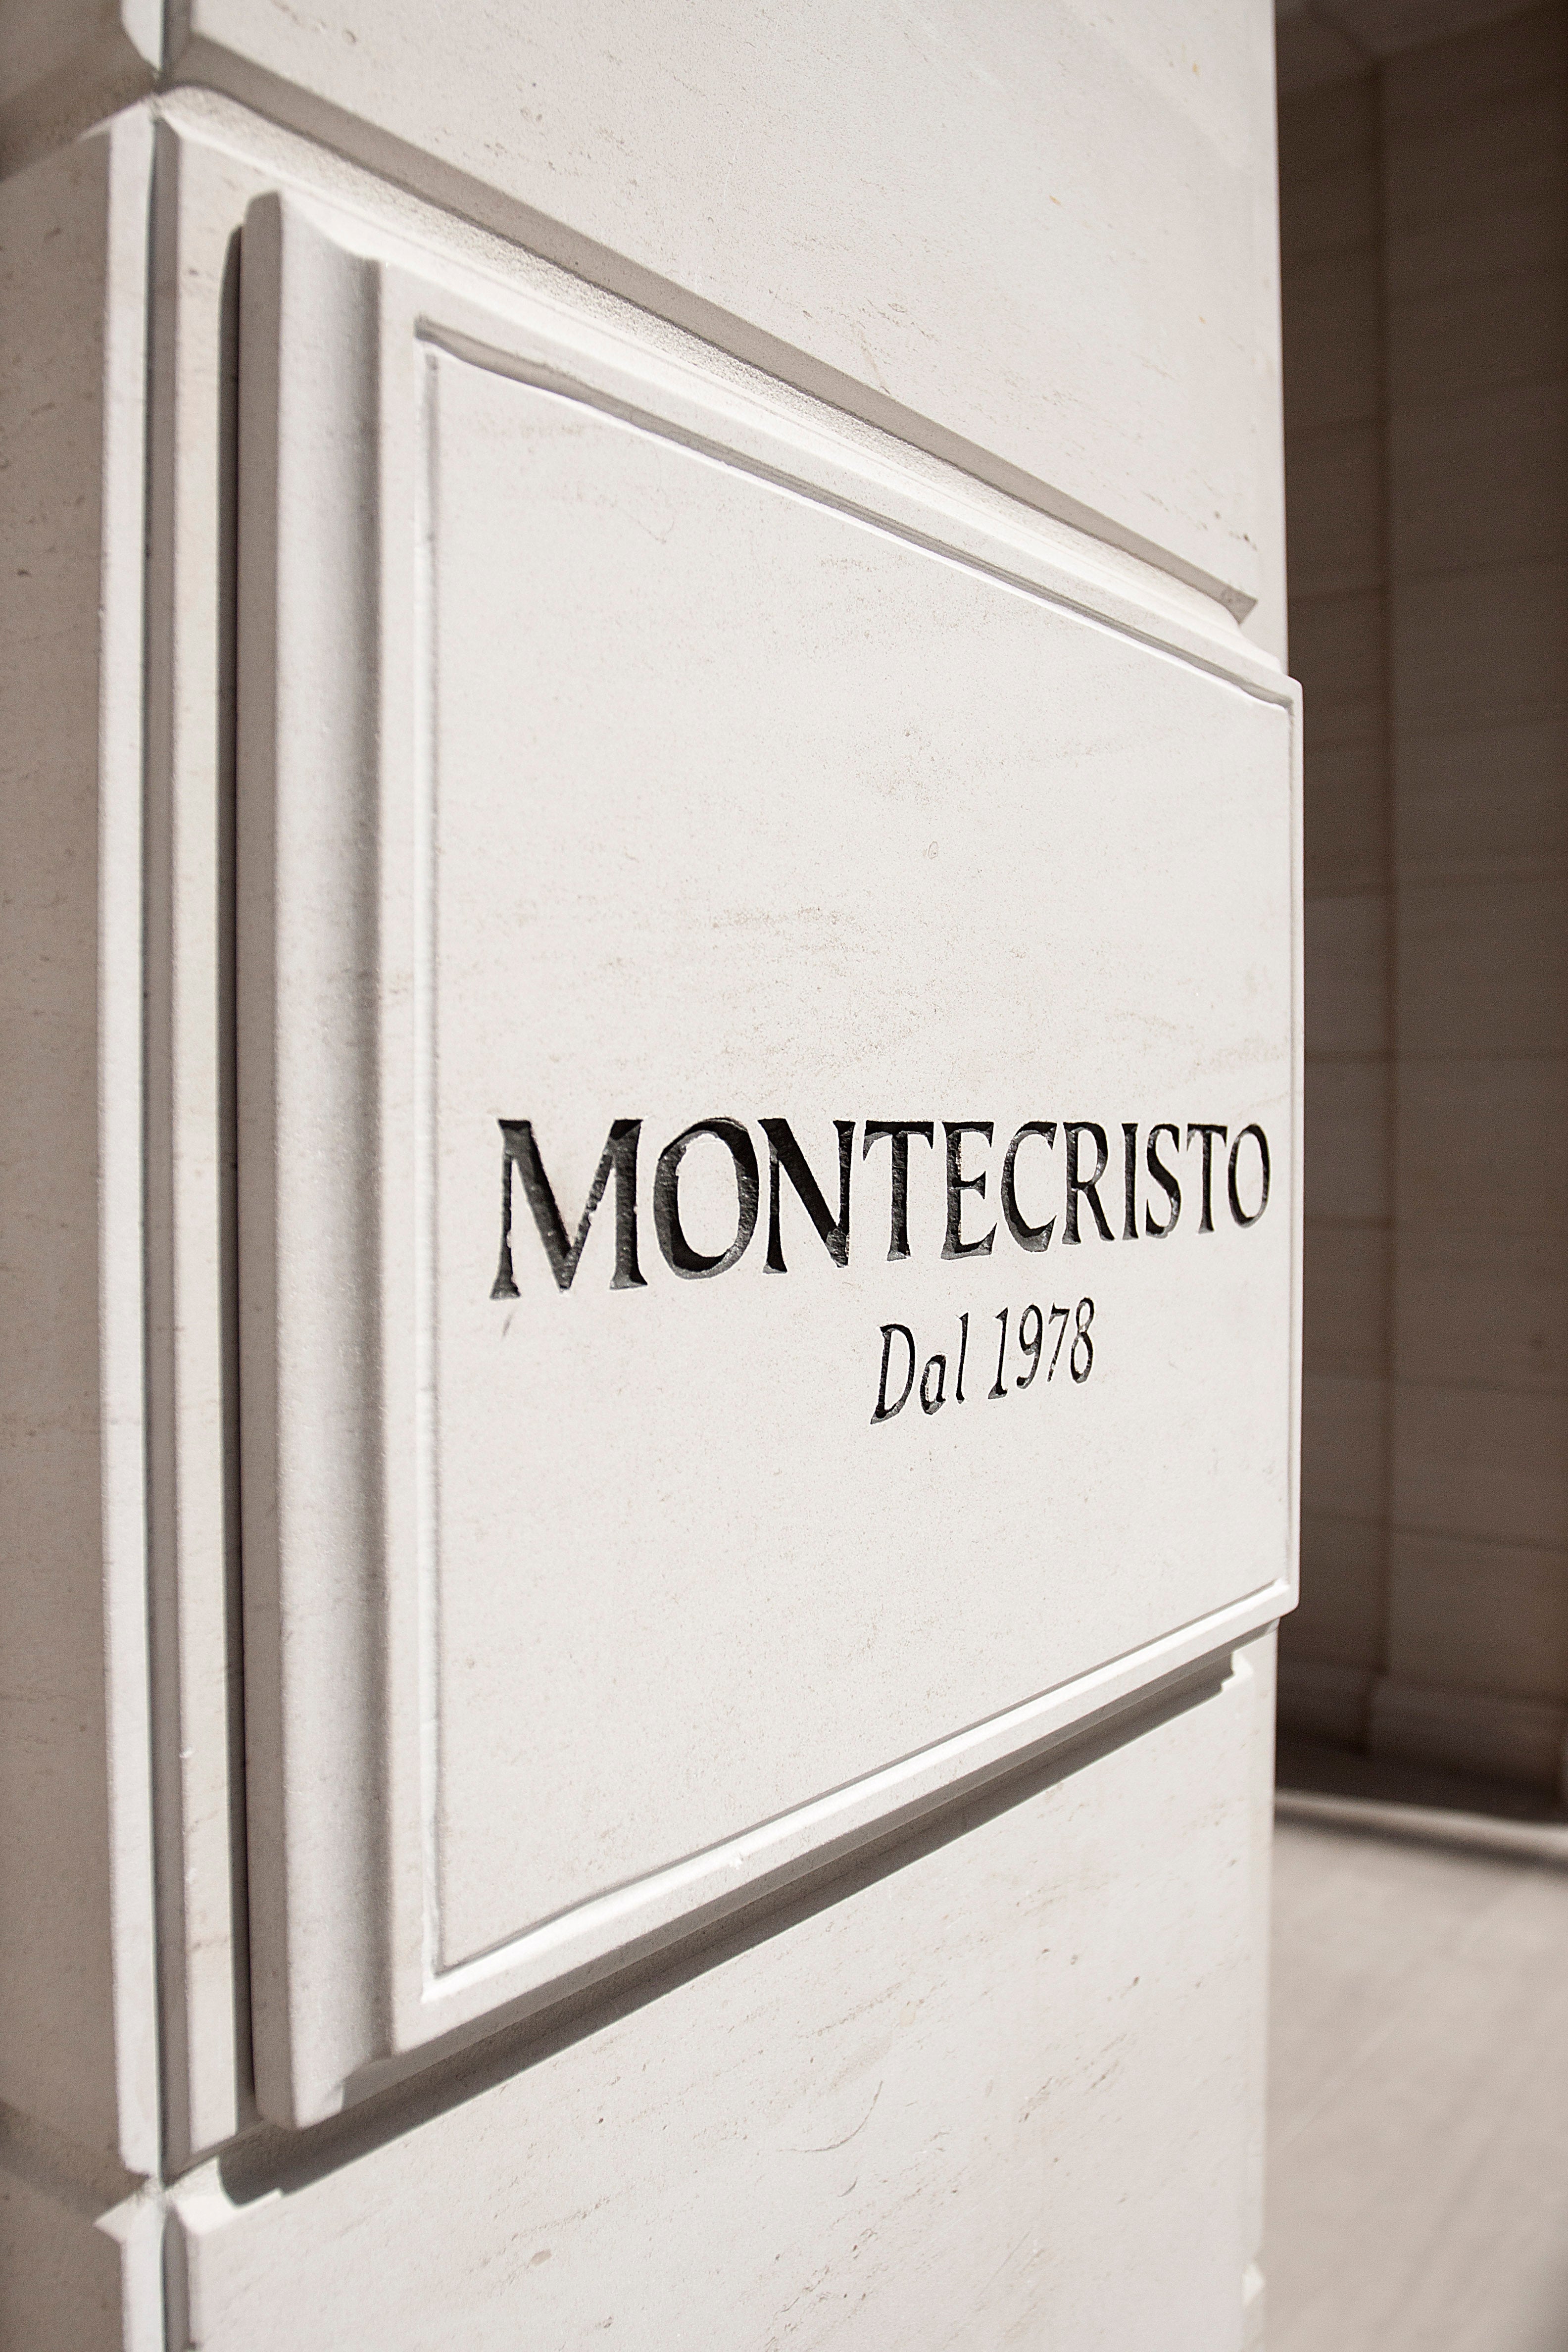 Contact Montecristo Jewellers